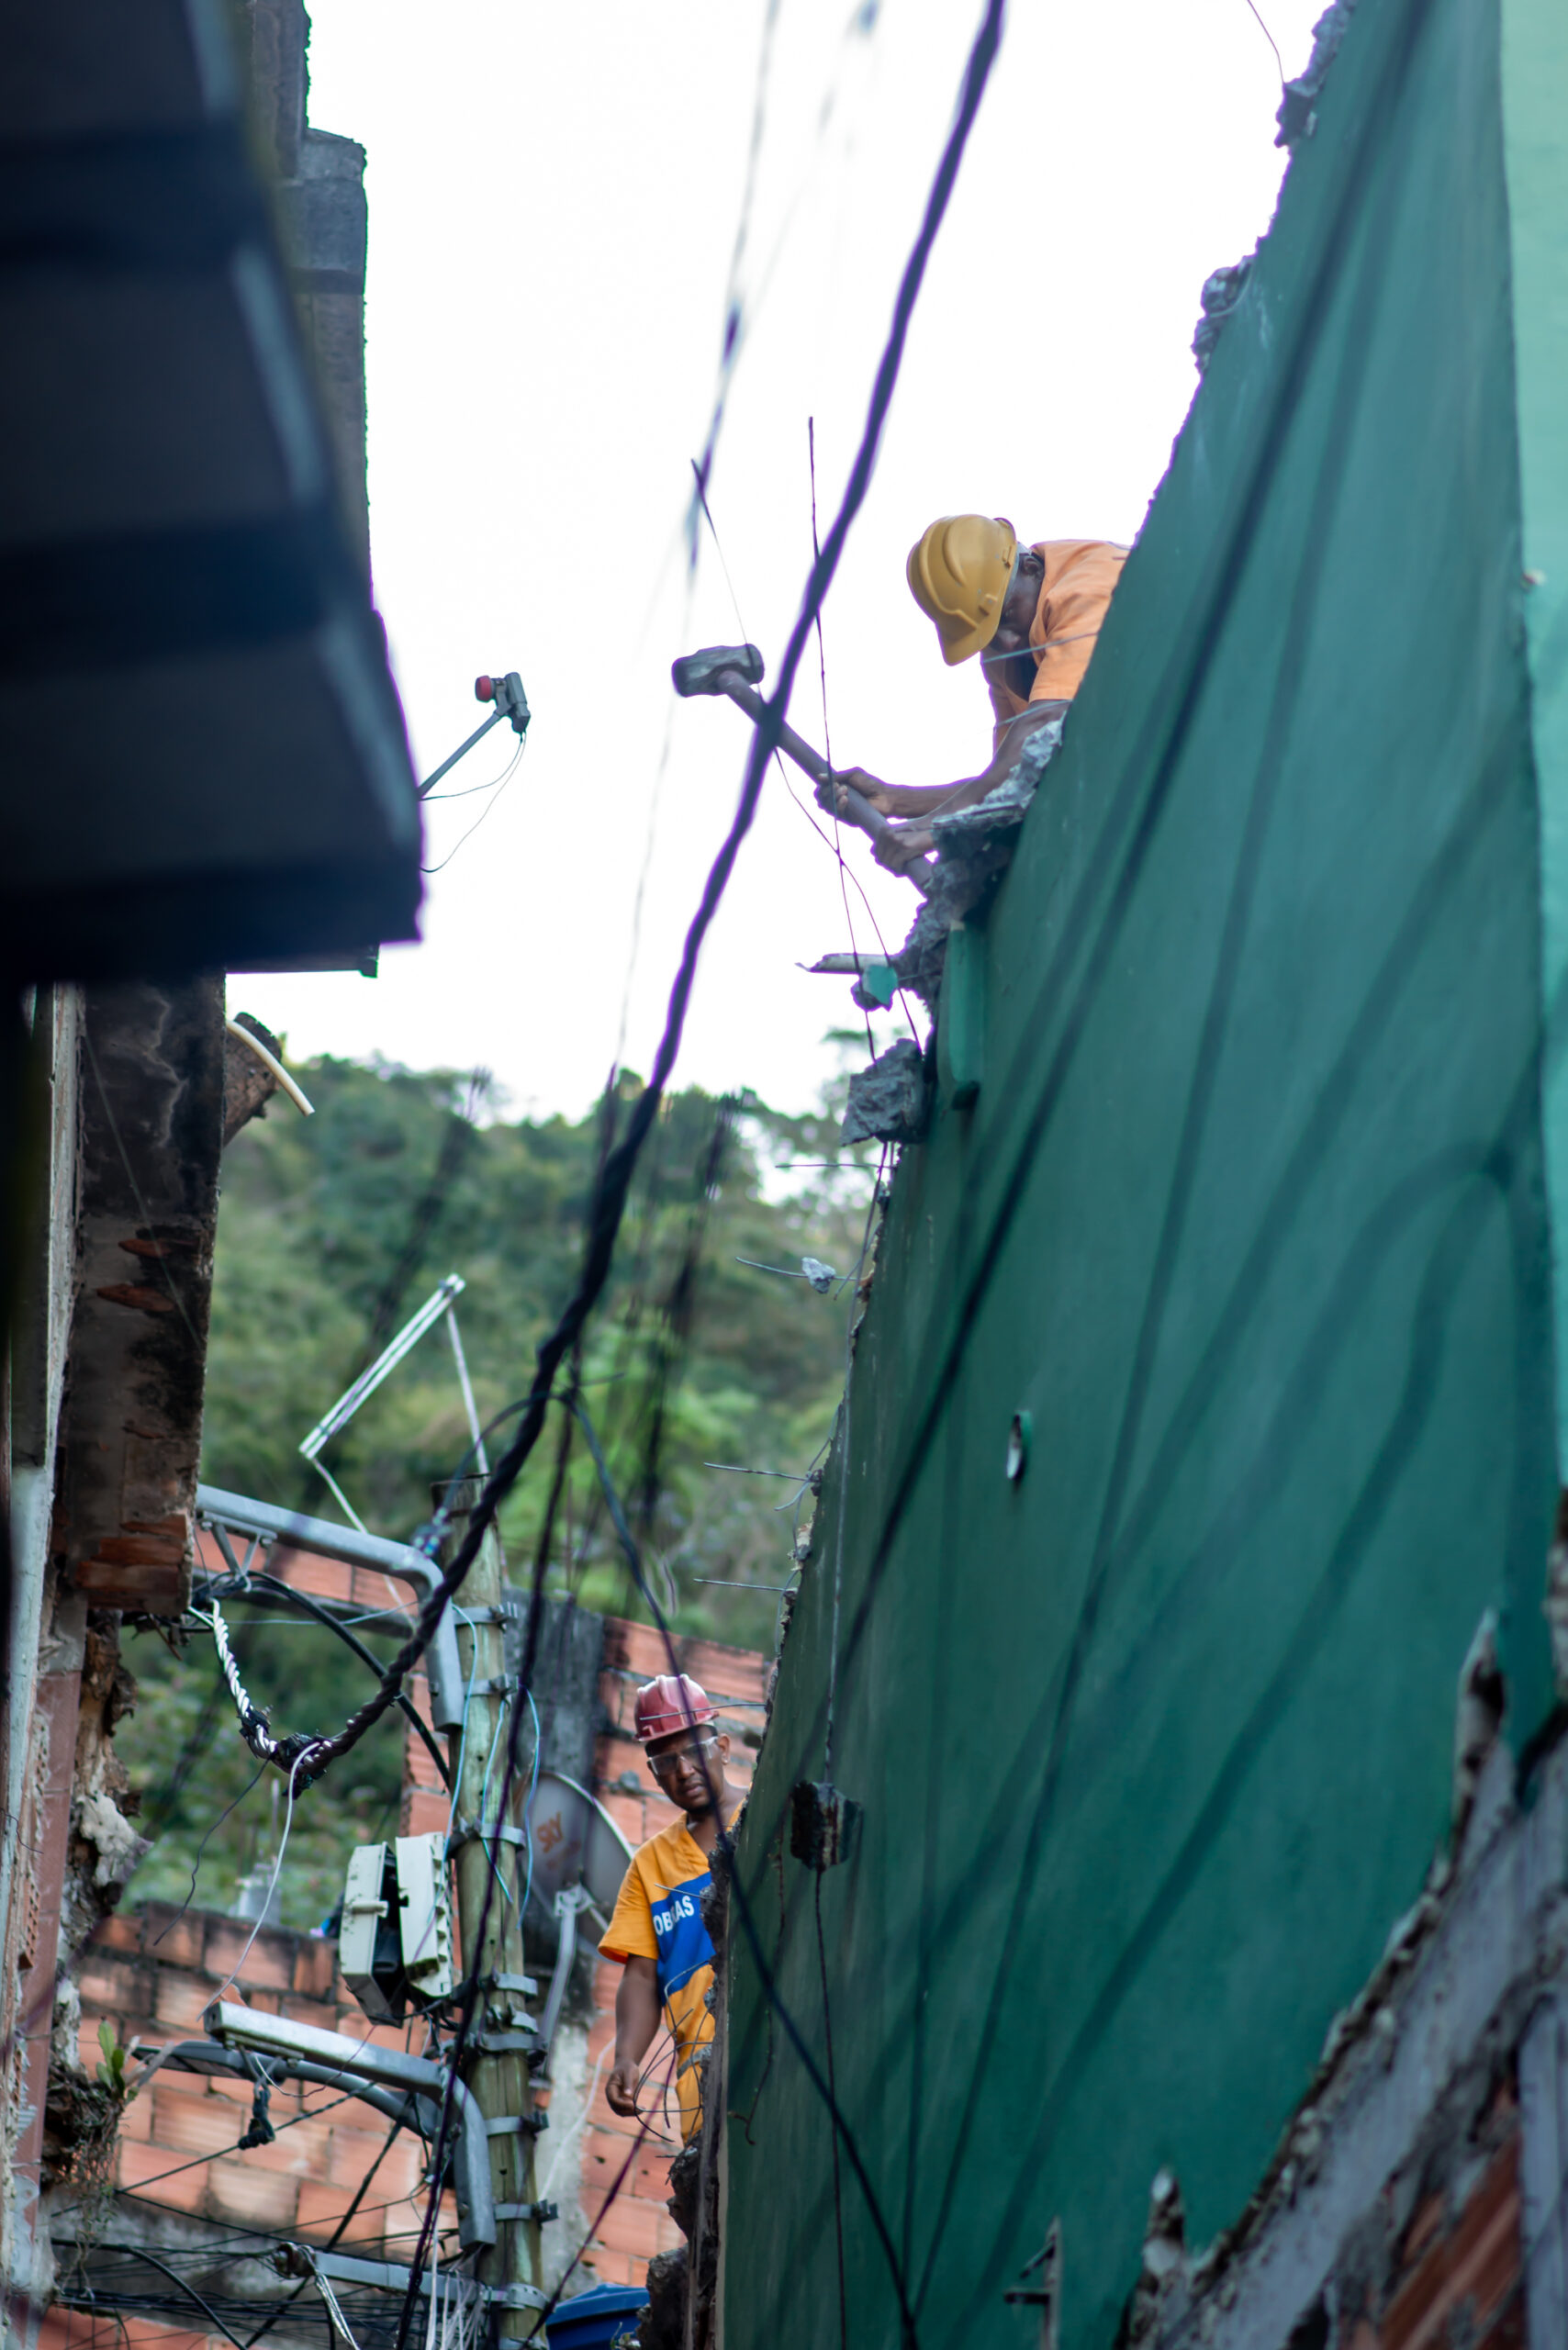 Após decisão judicial, funcionários da prefeitura reiniciam a demolição de casas na área da Jaqueira, na favela do Vidigal, Zona Sul do Rio. Foto: Igor Albuquerque